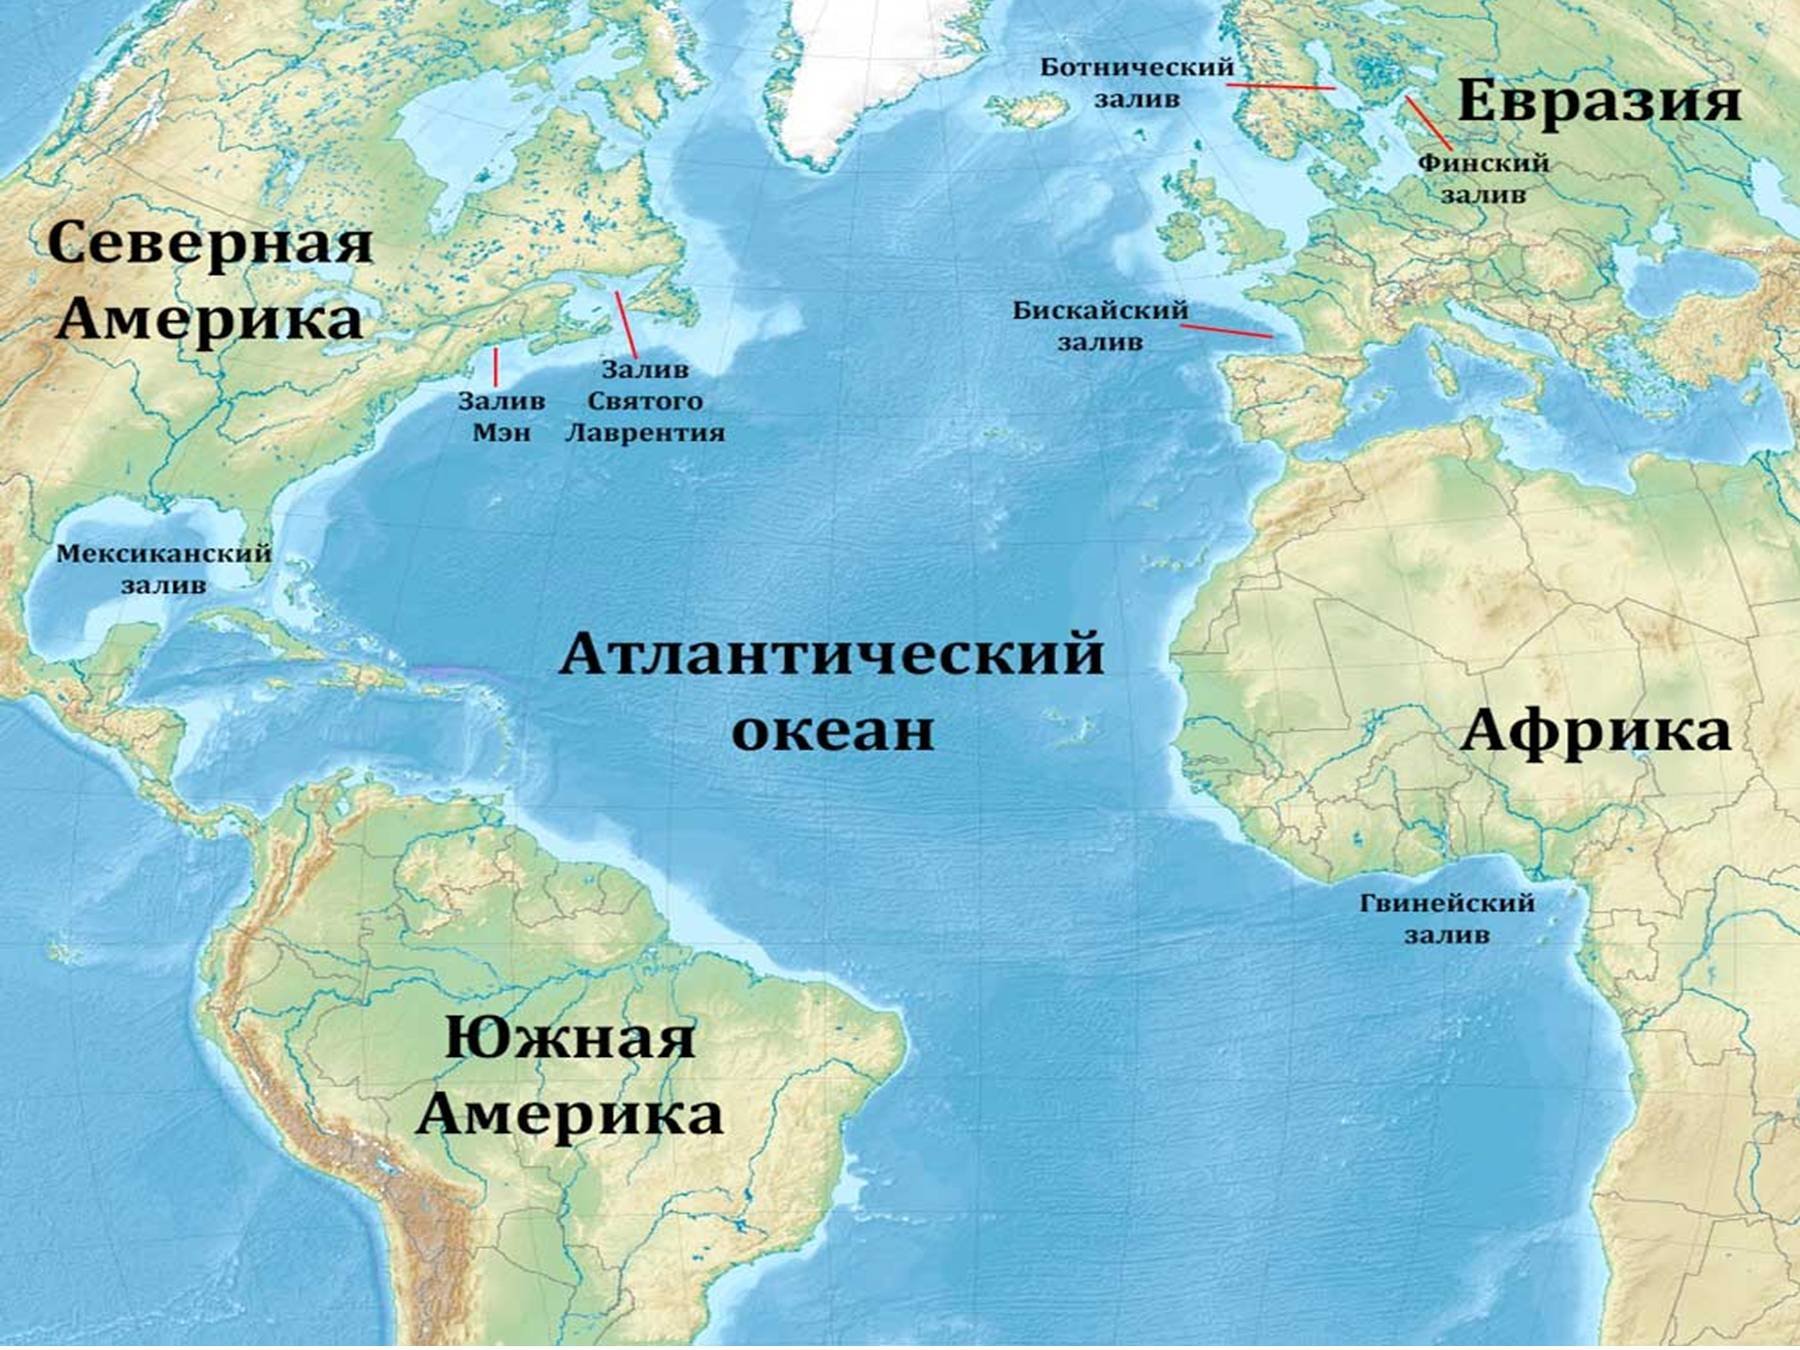 Остров омываемый двумя океанами. Расположение Атлантического океана на карте. Карта Атлантического океана с морями заливами и проливами. Атлантический океан на карте. Атлантический акеан на карте.